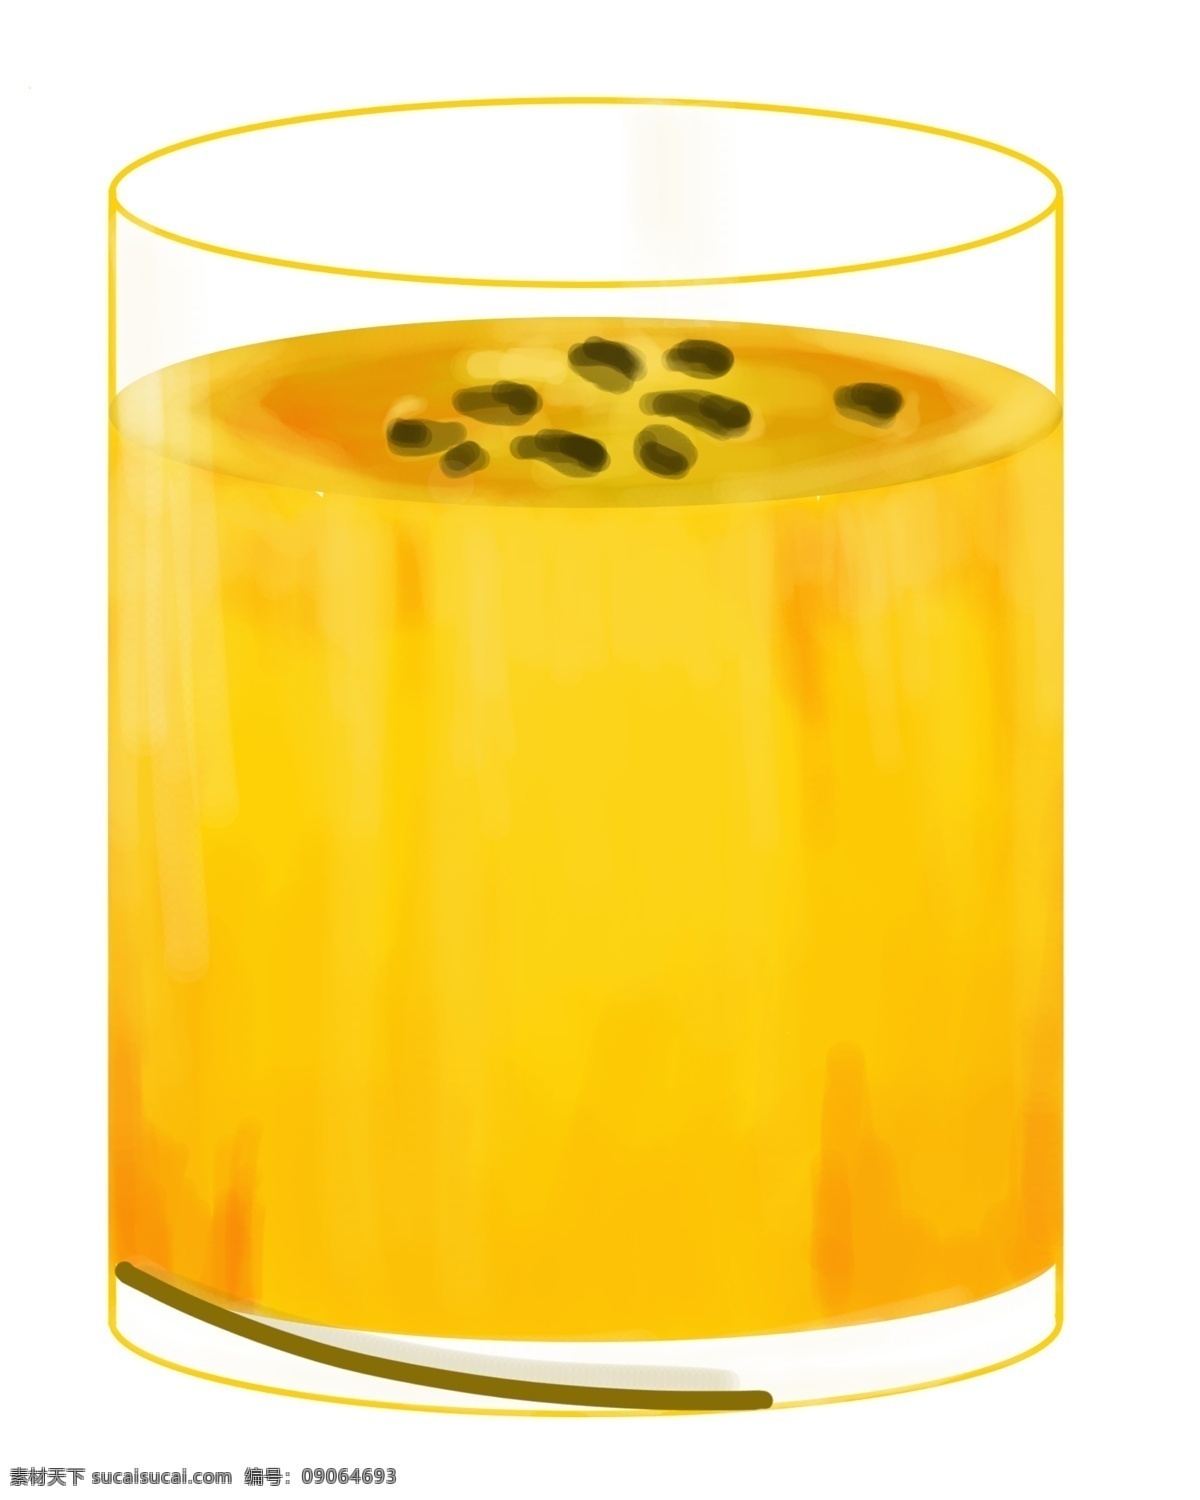 鲜榨 黄色 木瓜 汁 木瓜汁 果汁 饮料